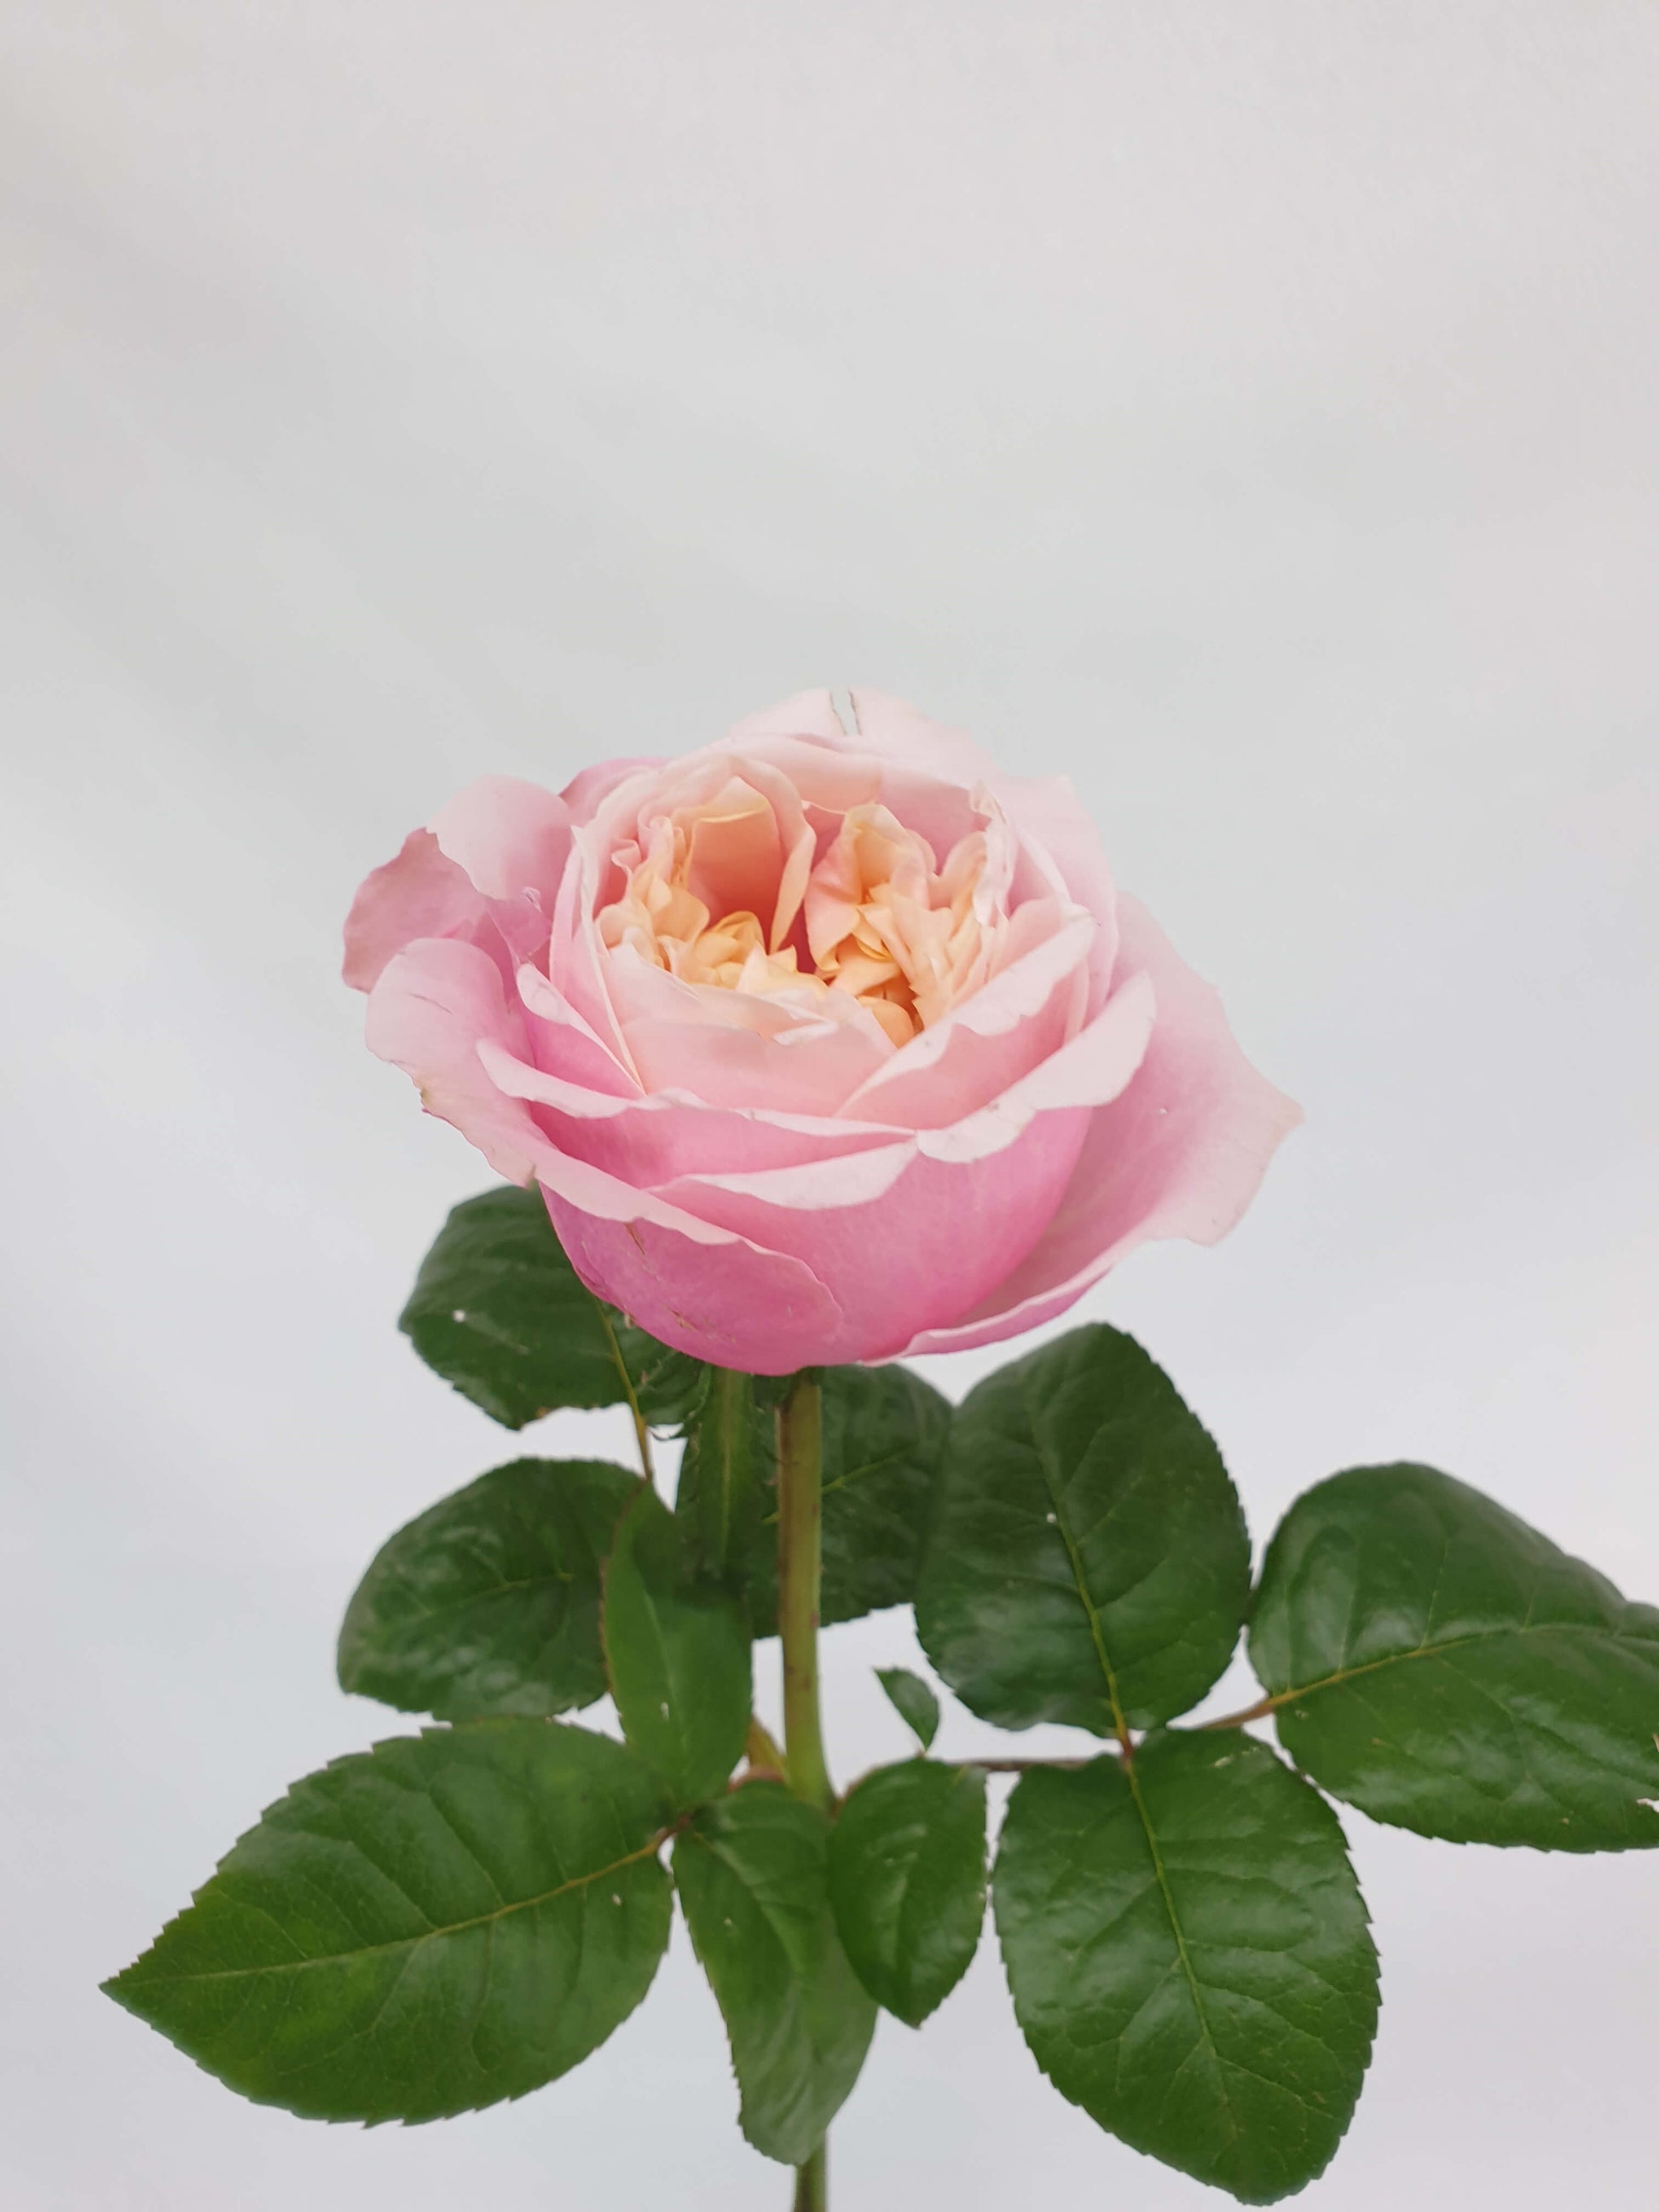 A light pink rose flower